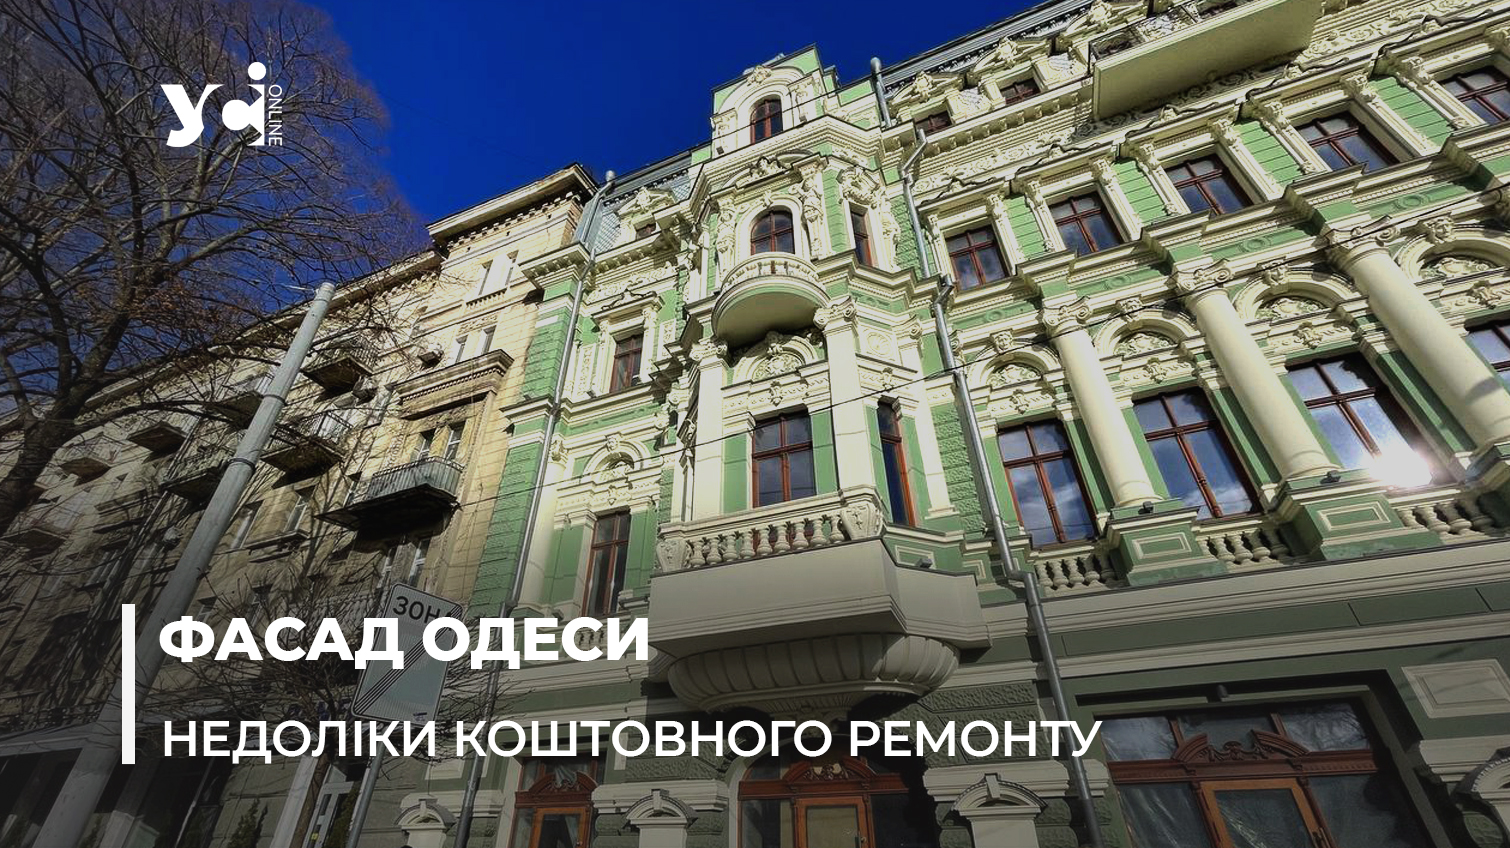 Ніколи не будо і ось знову: в Одесі осипається будинок Руссова (фото) «фото»